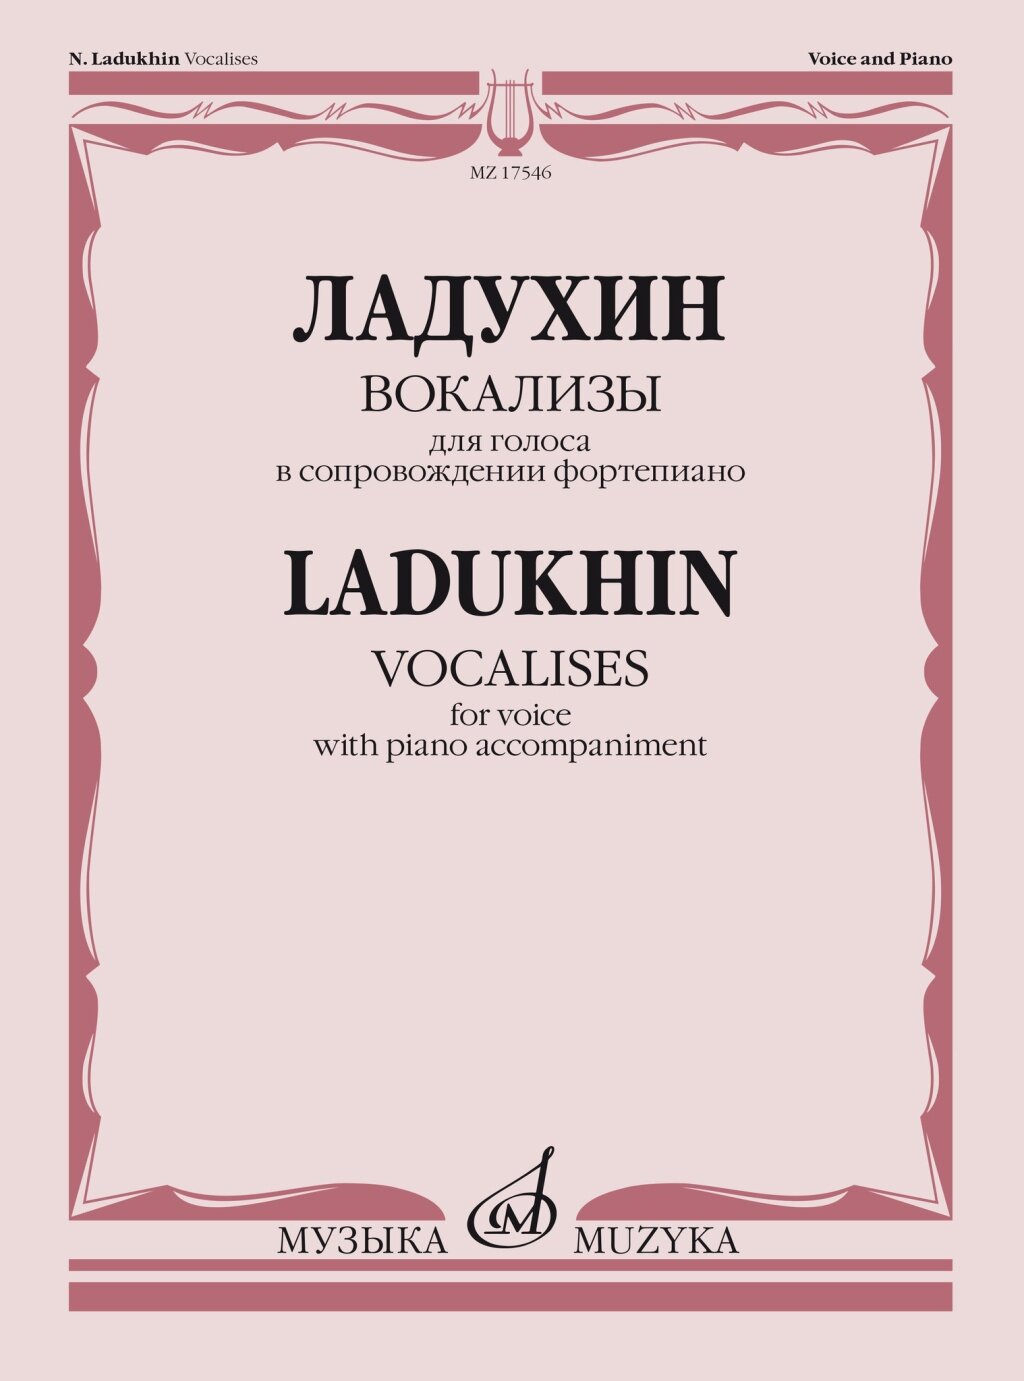 17546МИ Ладухин Н. М. Вокализы. Для голоса в сопровождении фортепиано, издательство "Музыка"